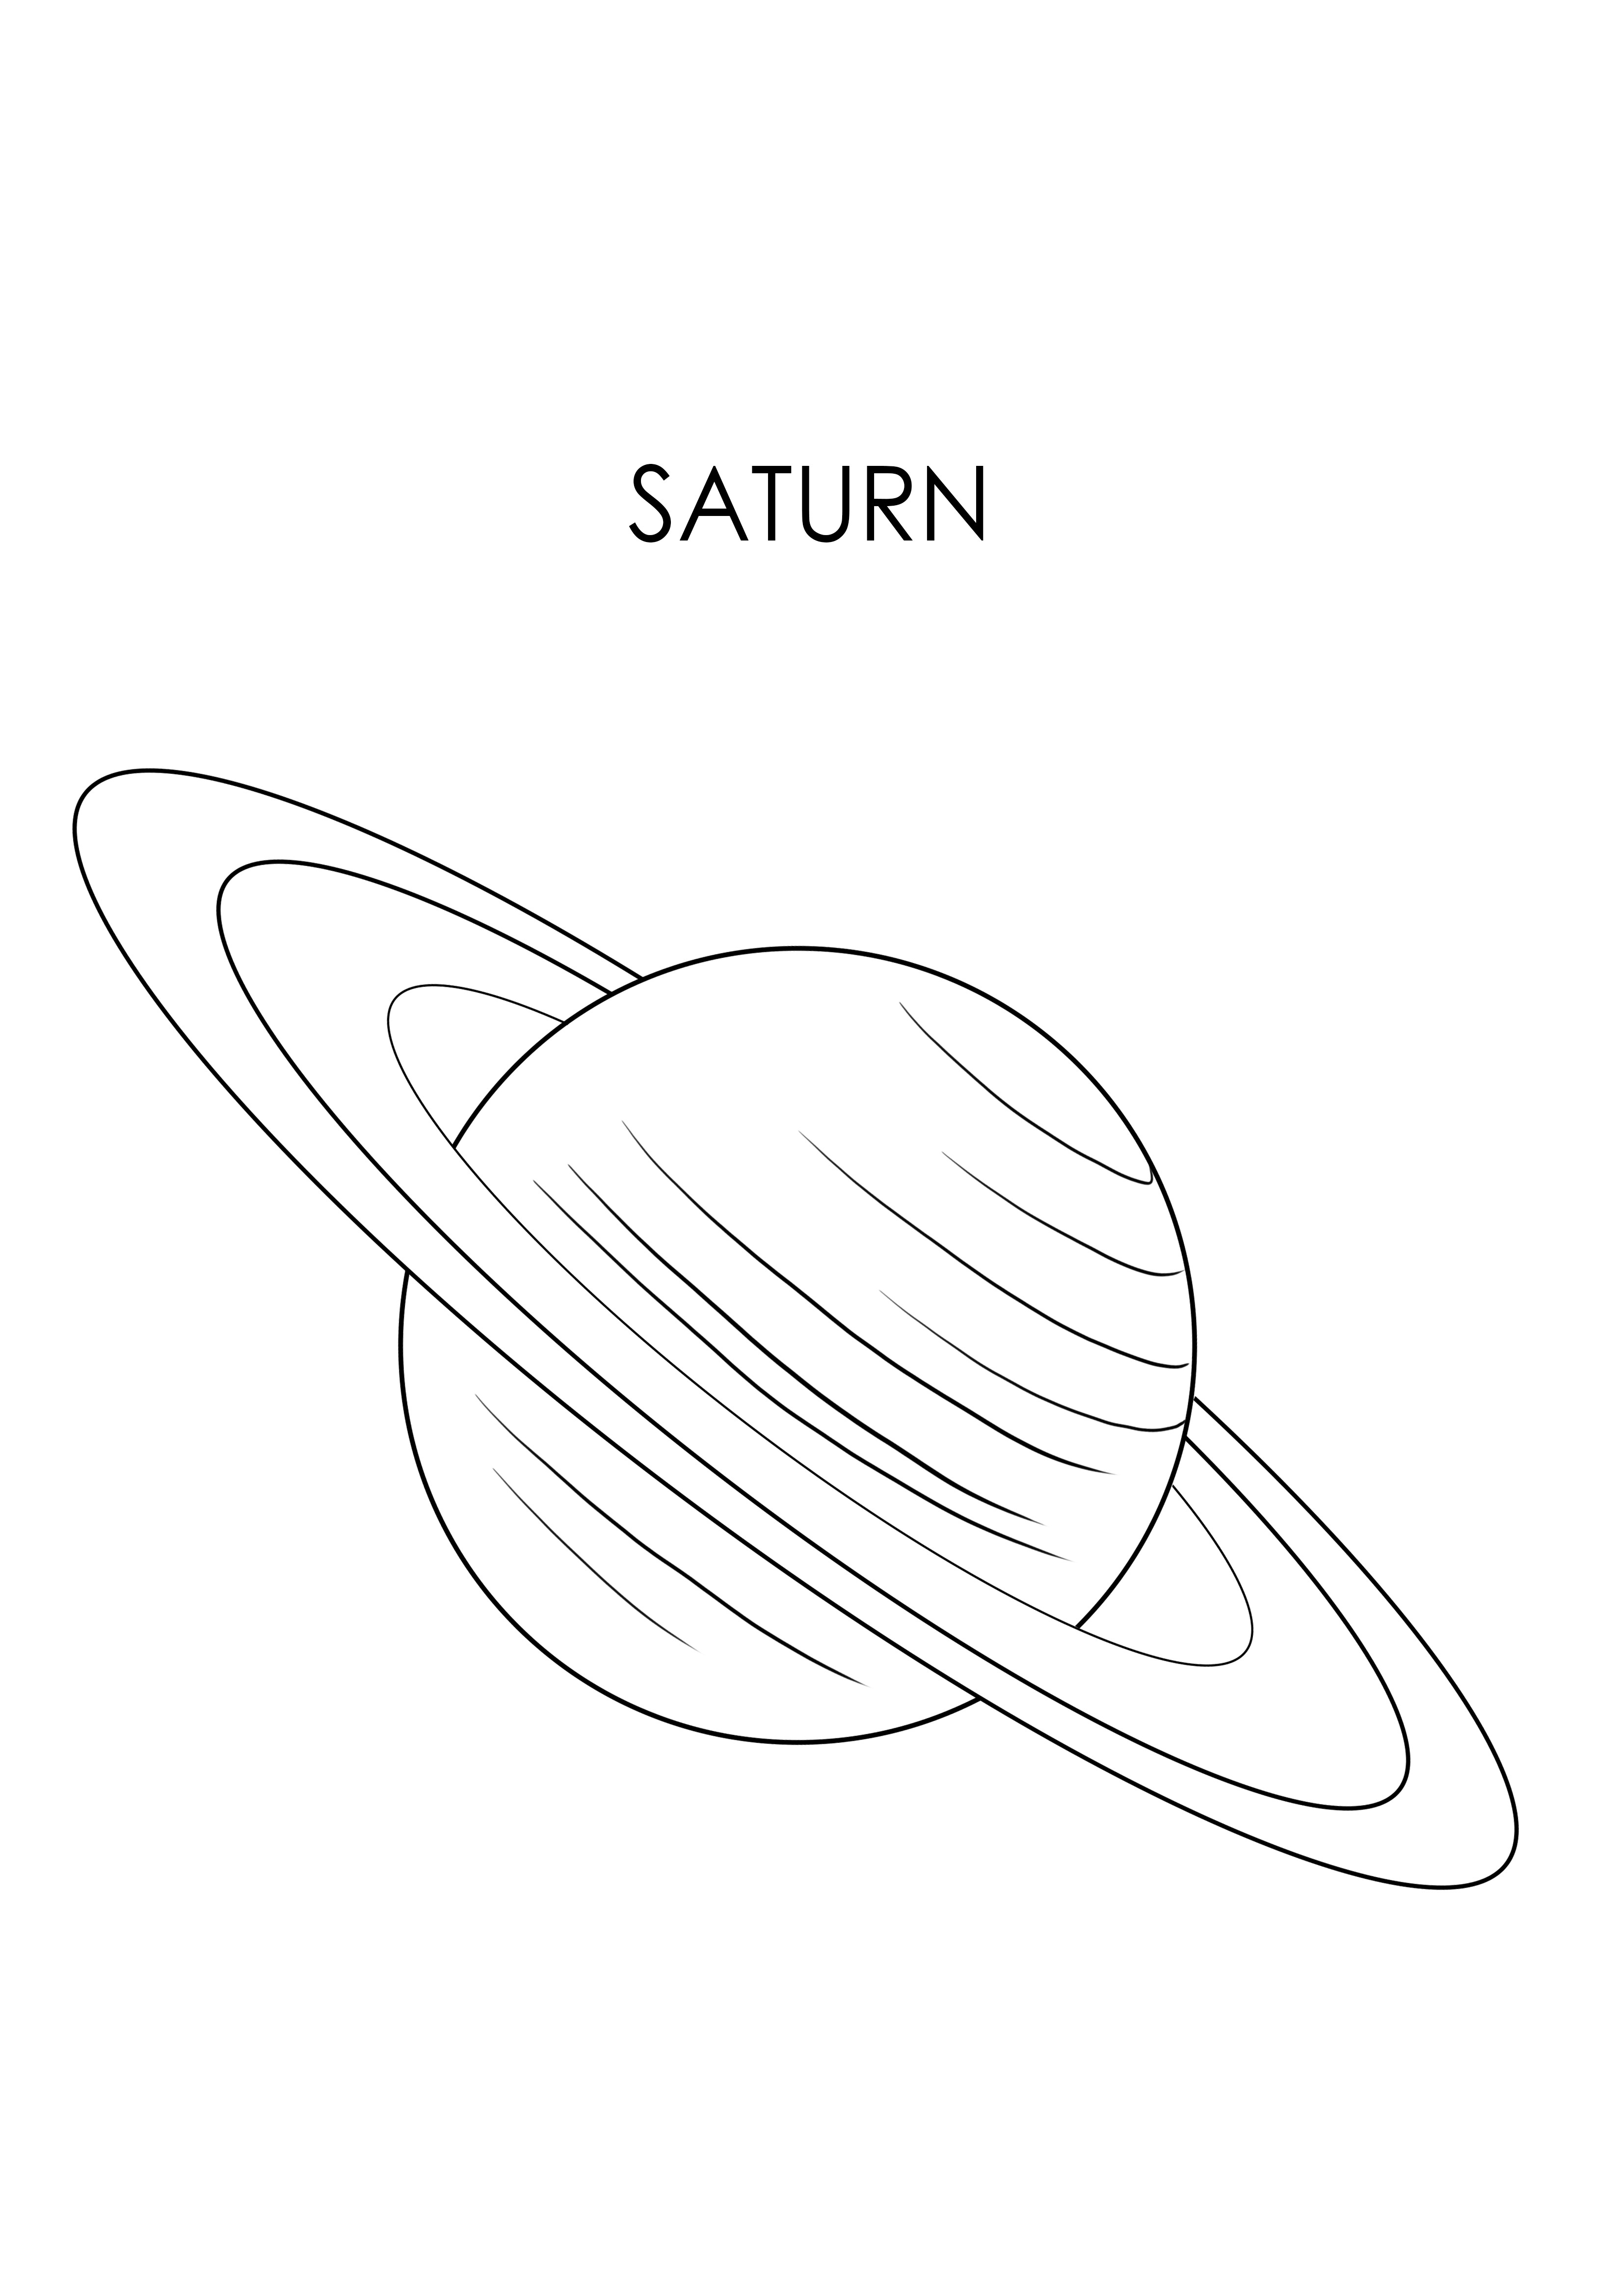 Pianeta Saturno da scaricare gratuitamente